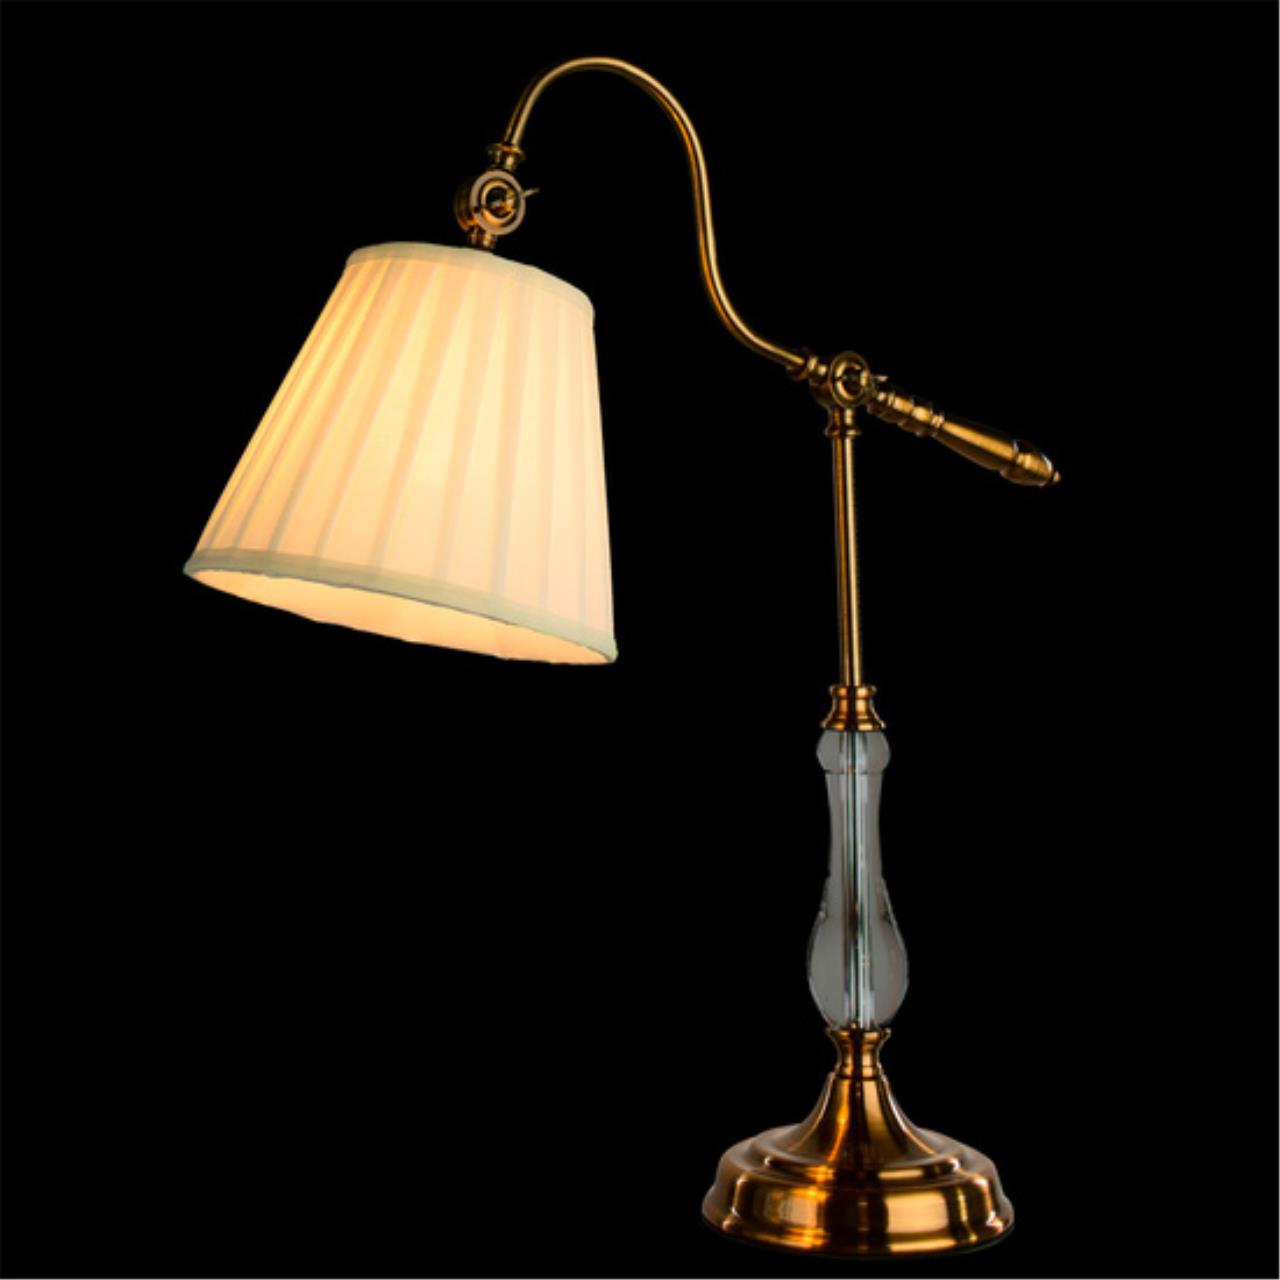 Интерьерная настольная лампа Arte lamp A1509LT-1PB СВЕТИЛЬНИК НАСТОЛЬНЫЙ